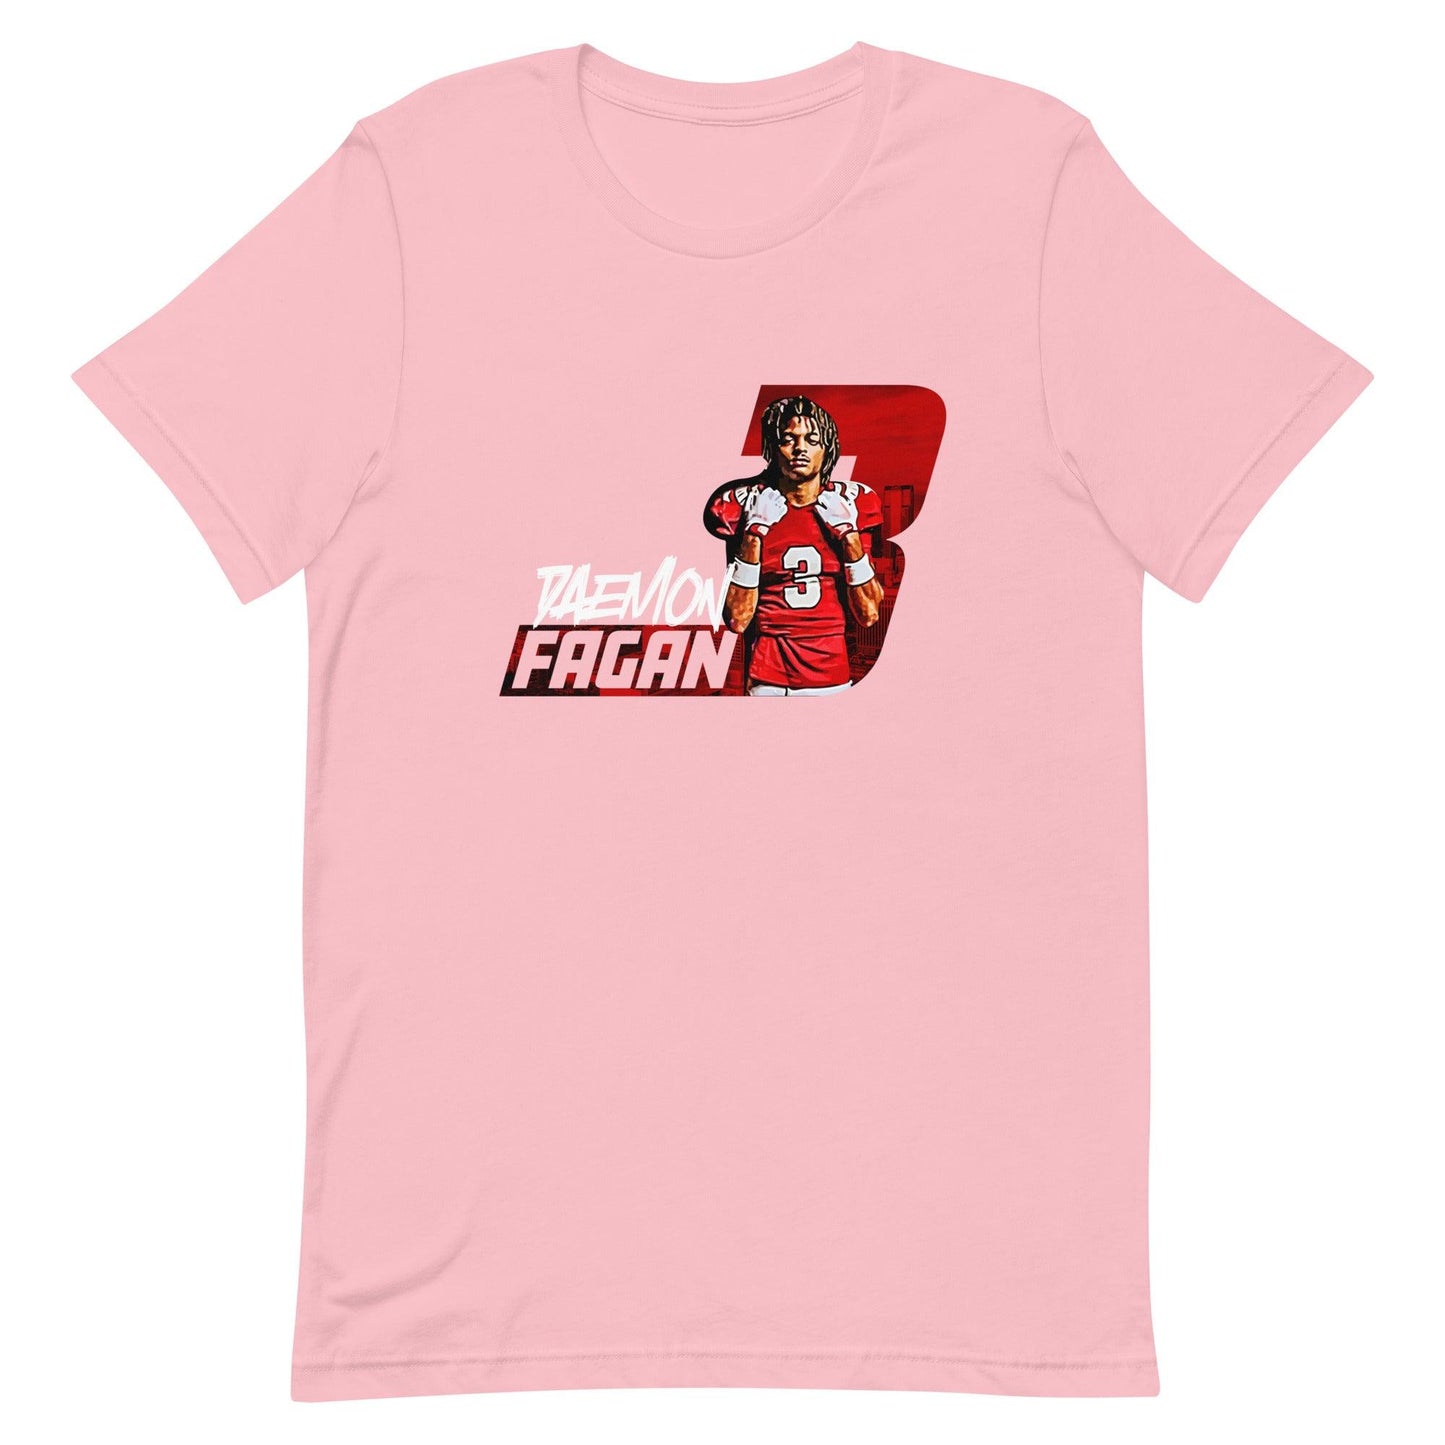 Daemon Fagan "Gameday" t-shirt - Fan Arch